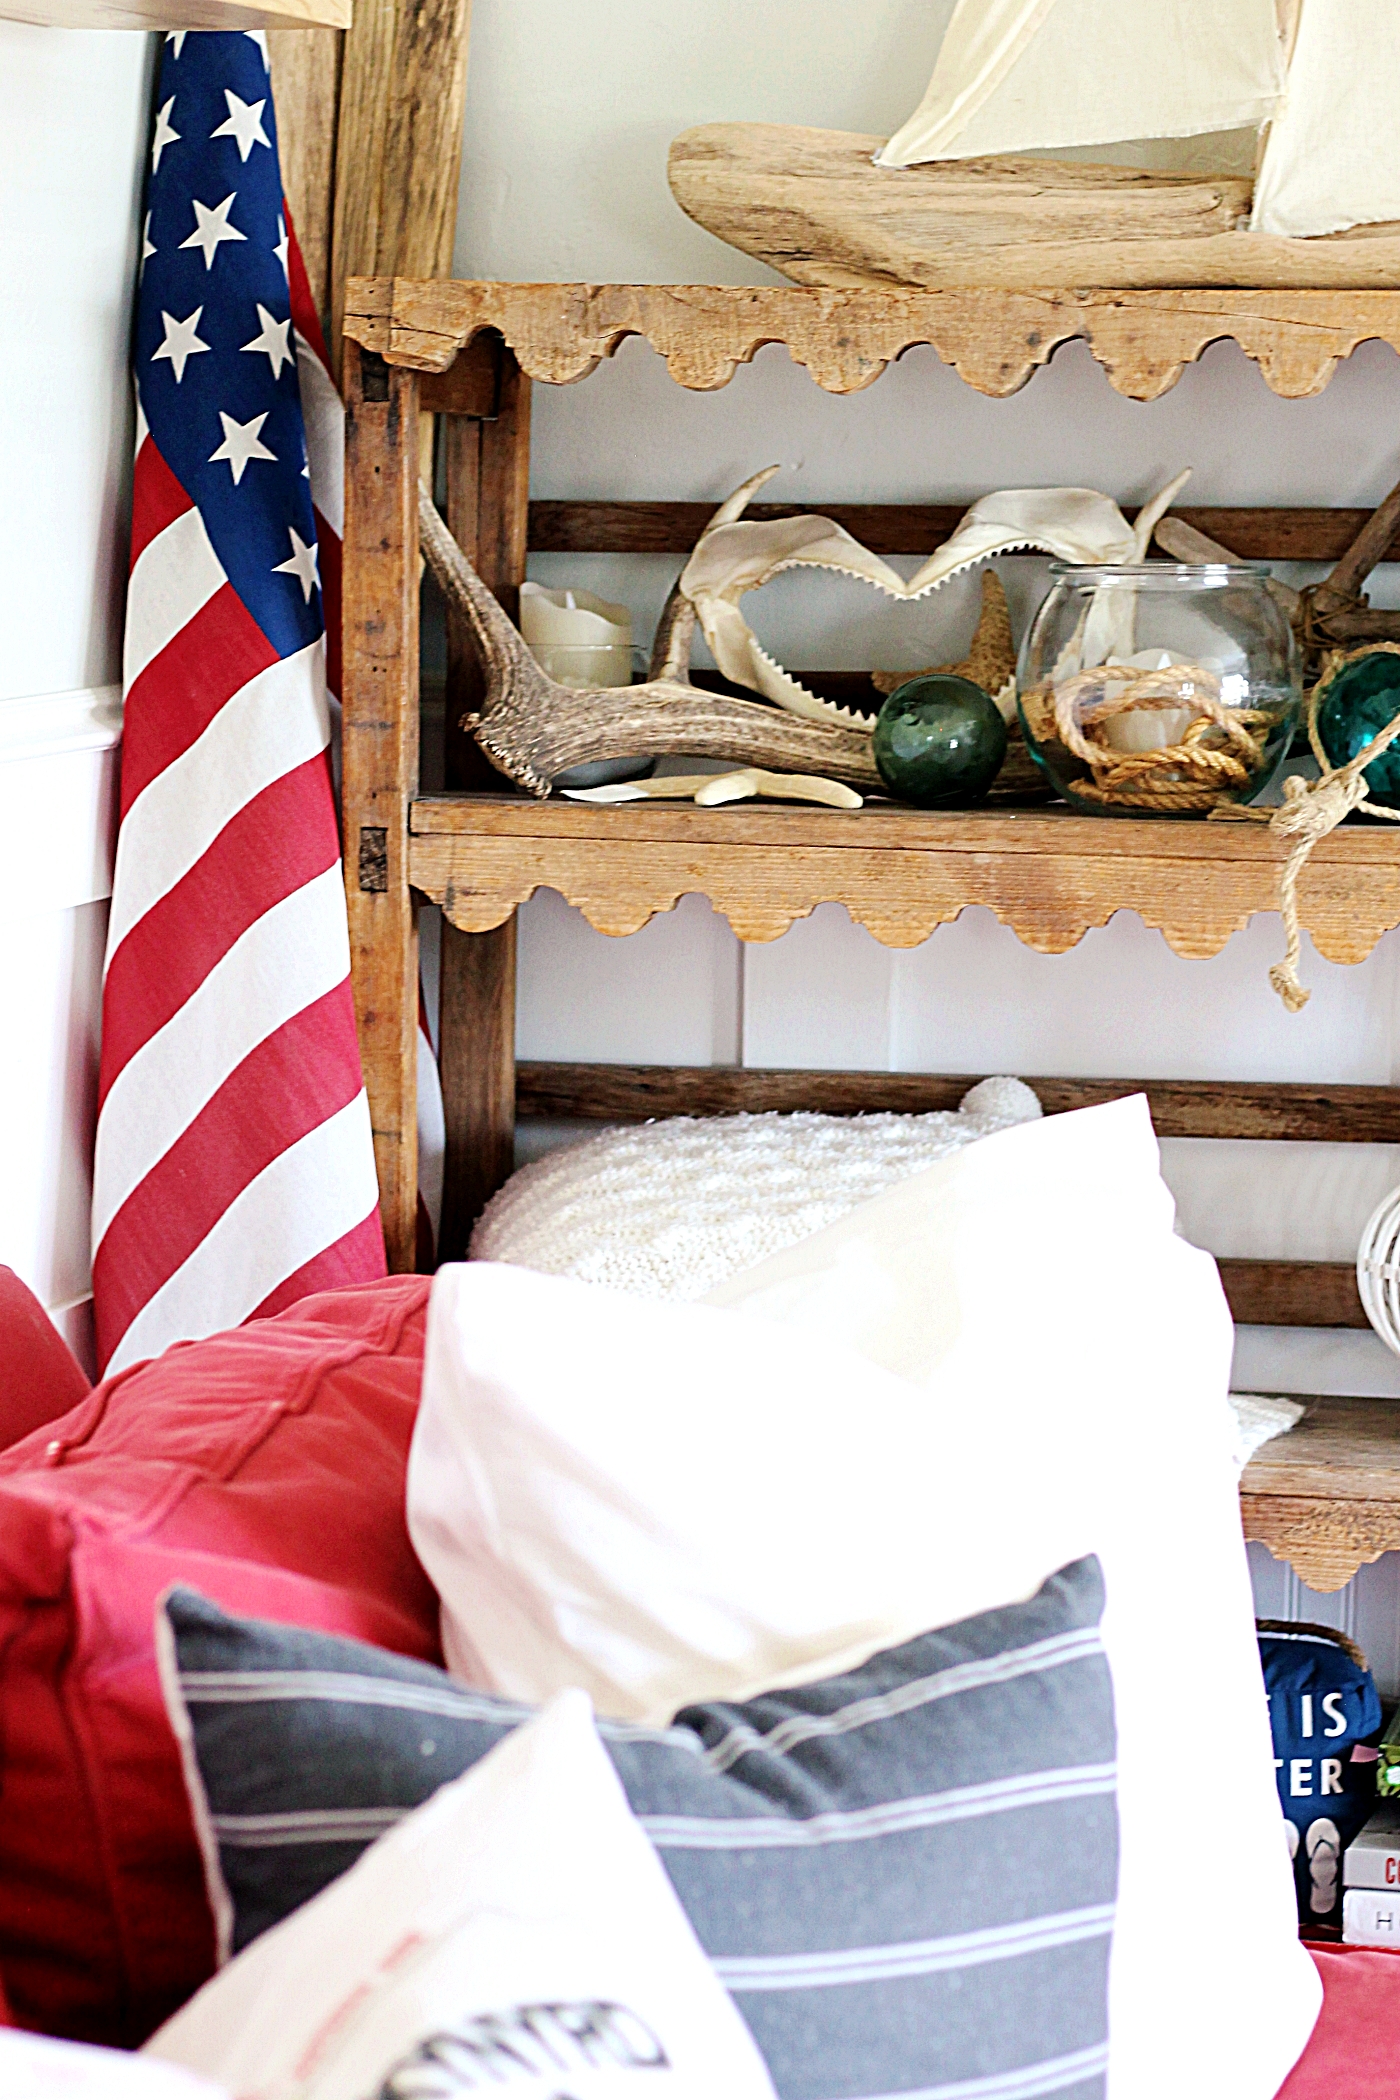 Wood Rack Shelf in Living Room + Nautical/Americana Styling